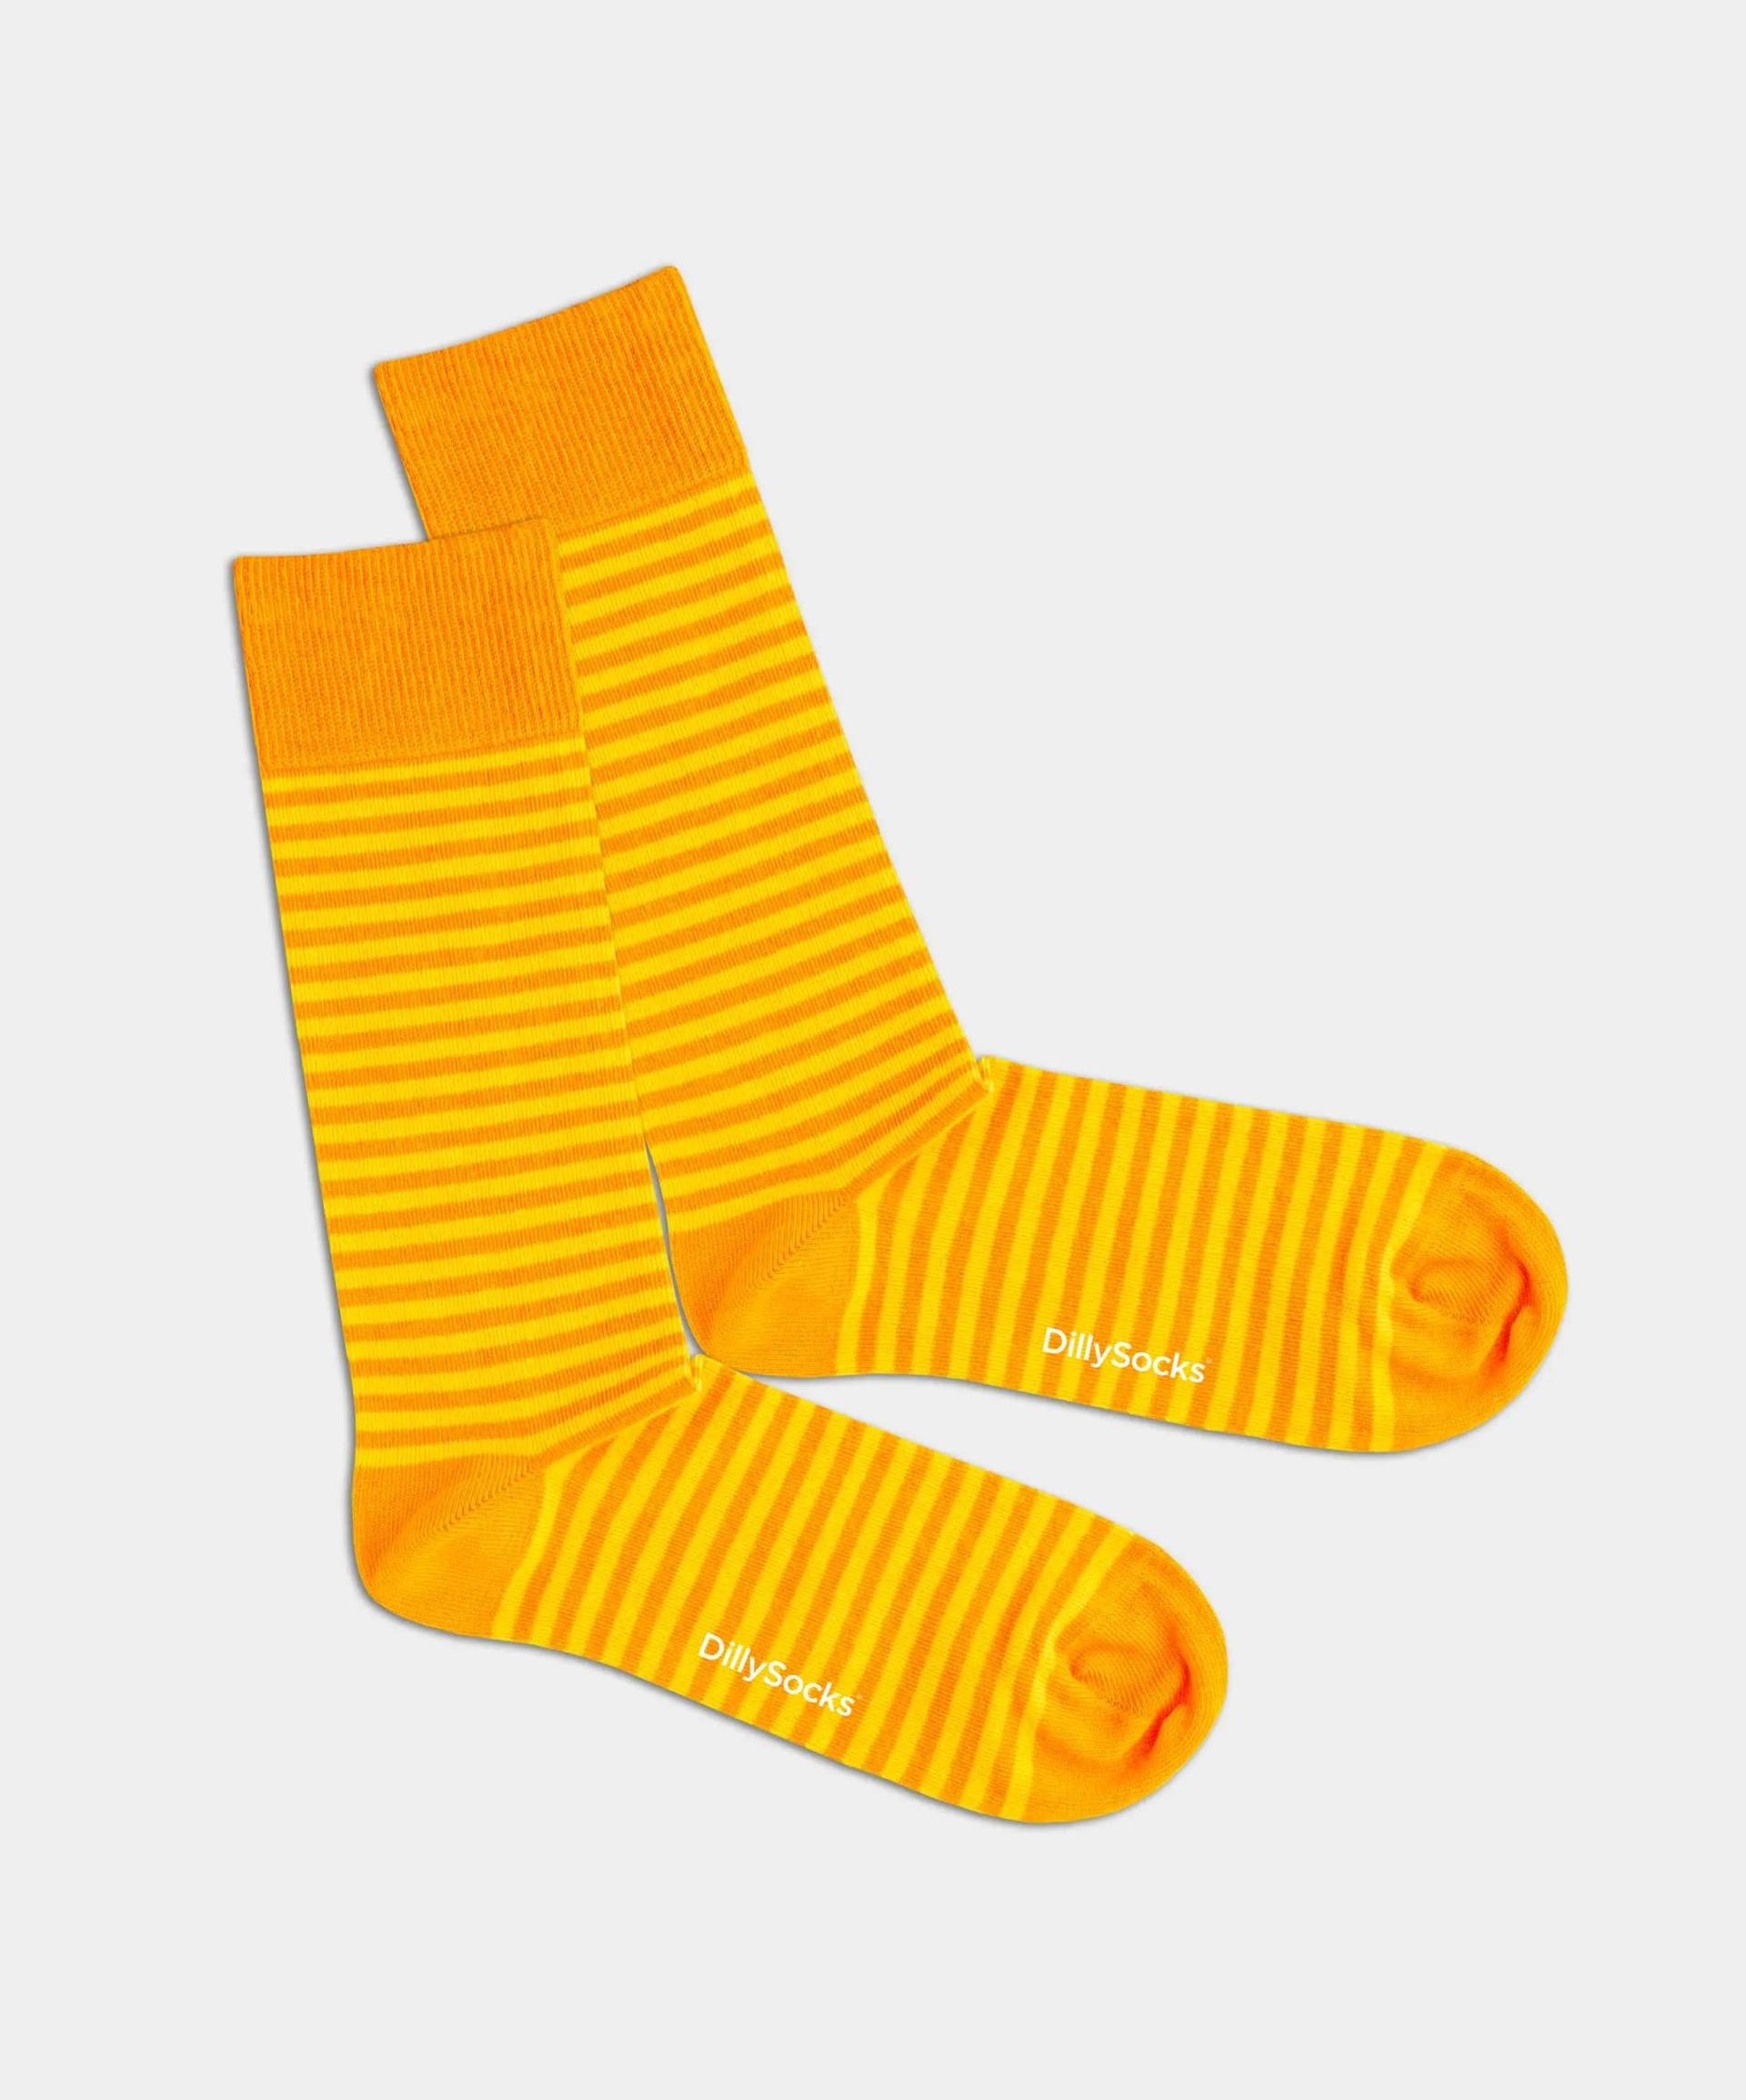 - Socken in Gelb Orange mit Streifen Motiv/Muster von DillySocks